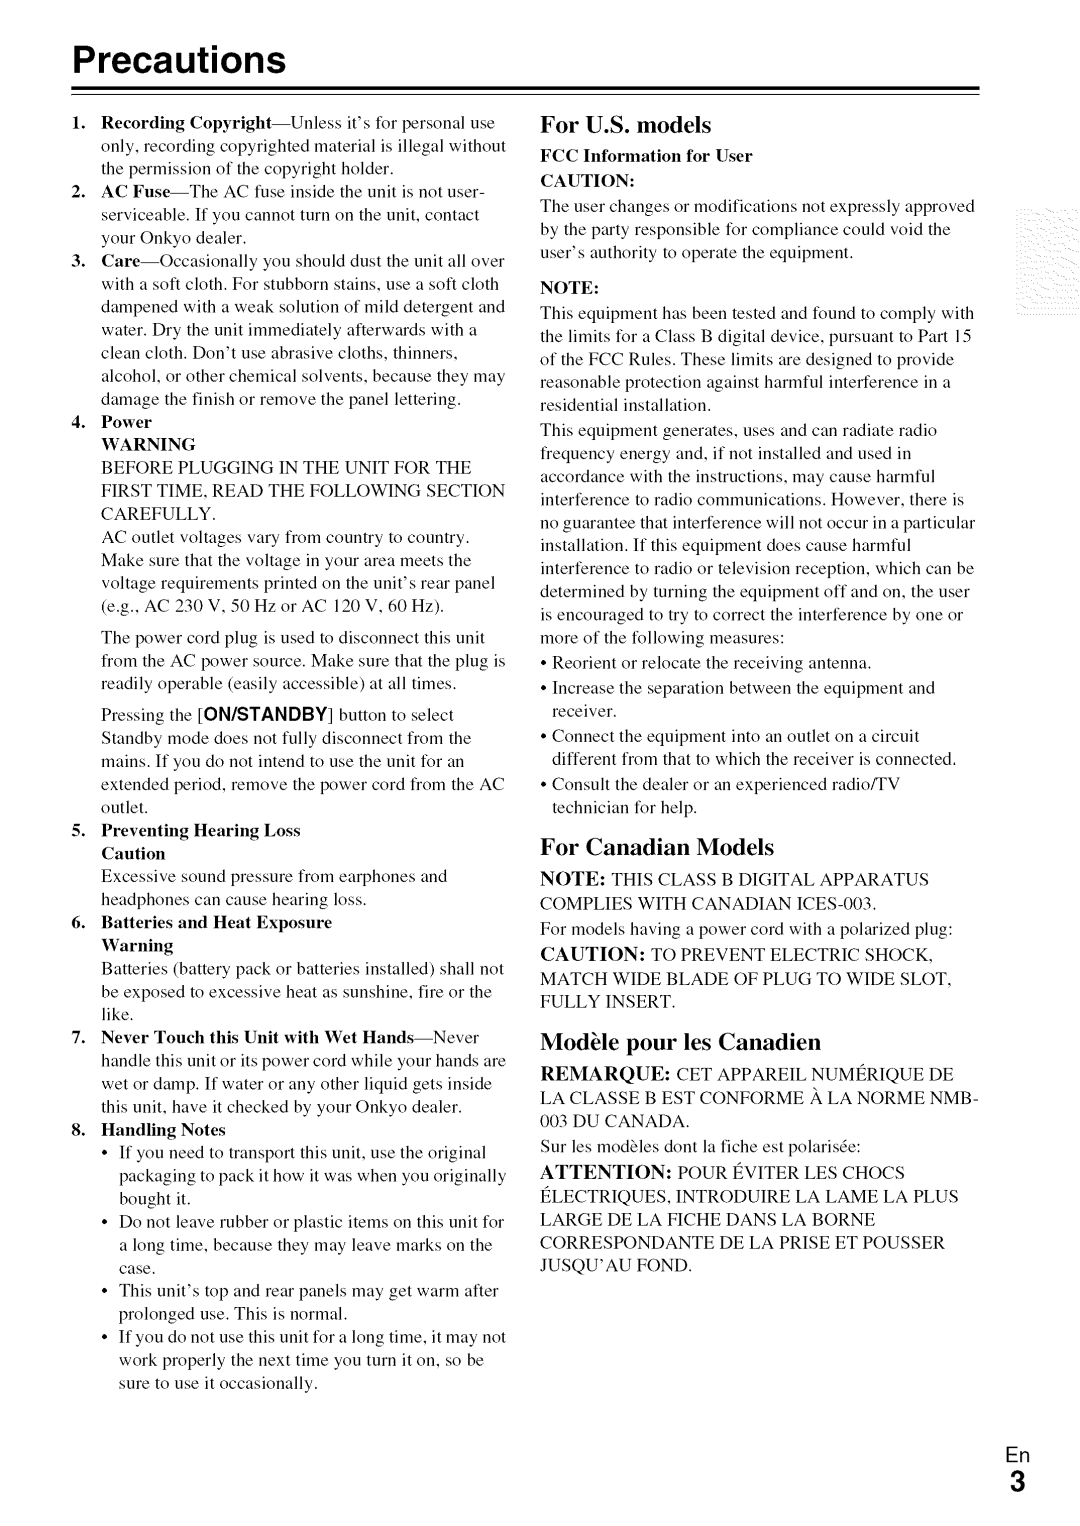 Onkyo HT-R590 instruction manual Precautions, For Canadian Models, ModUle pour les Canadien 